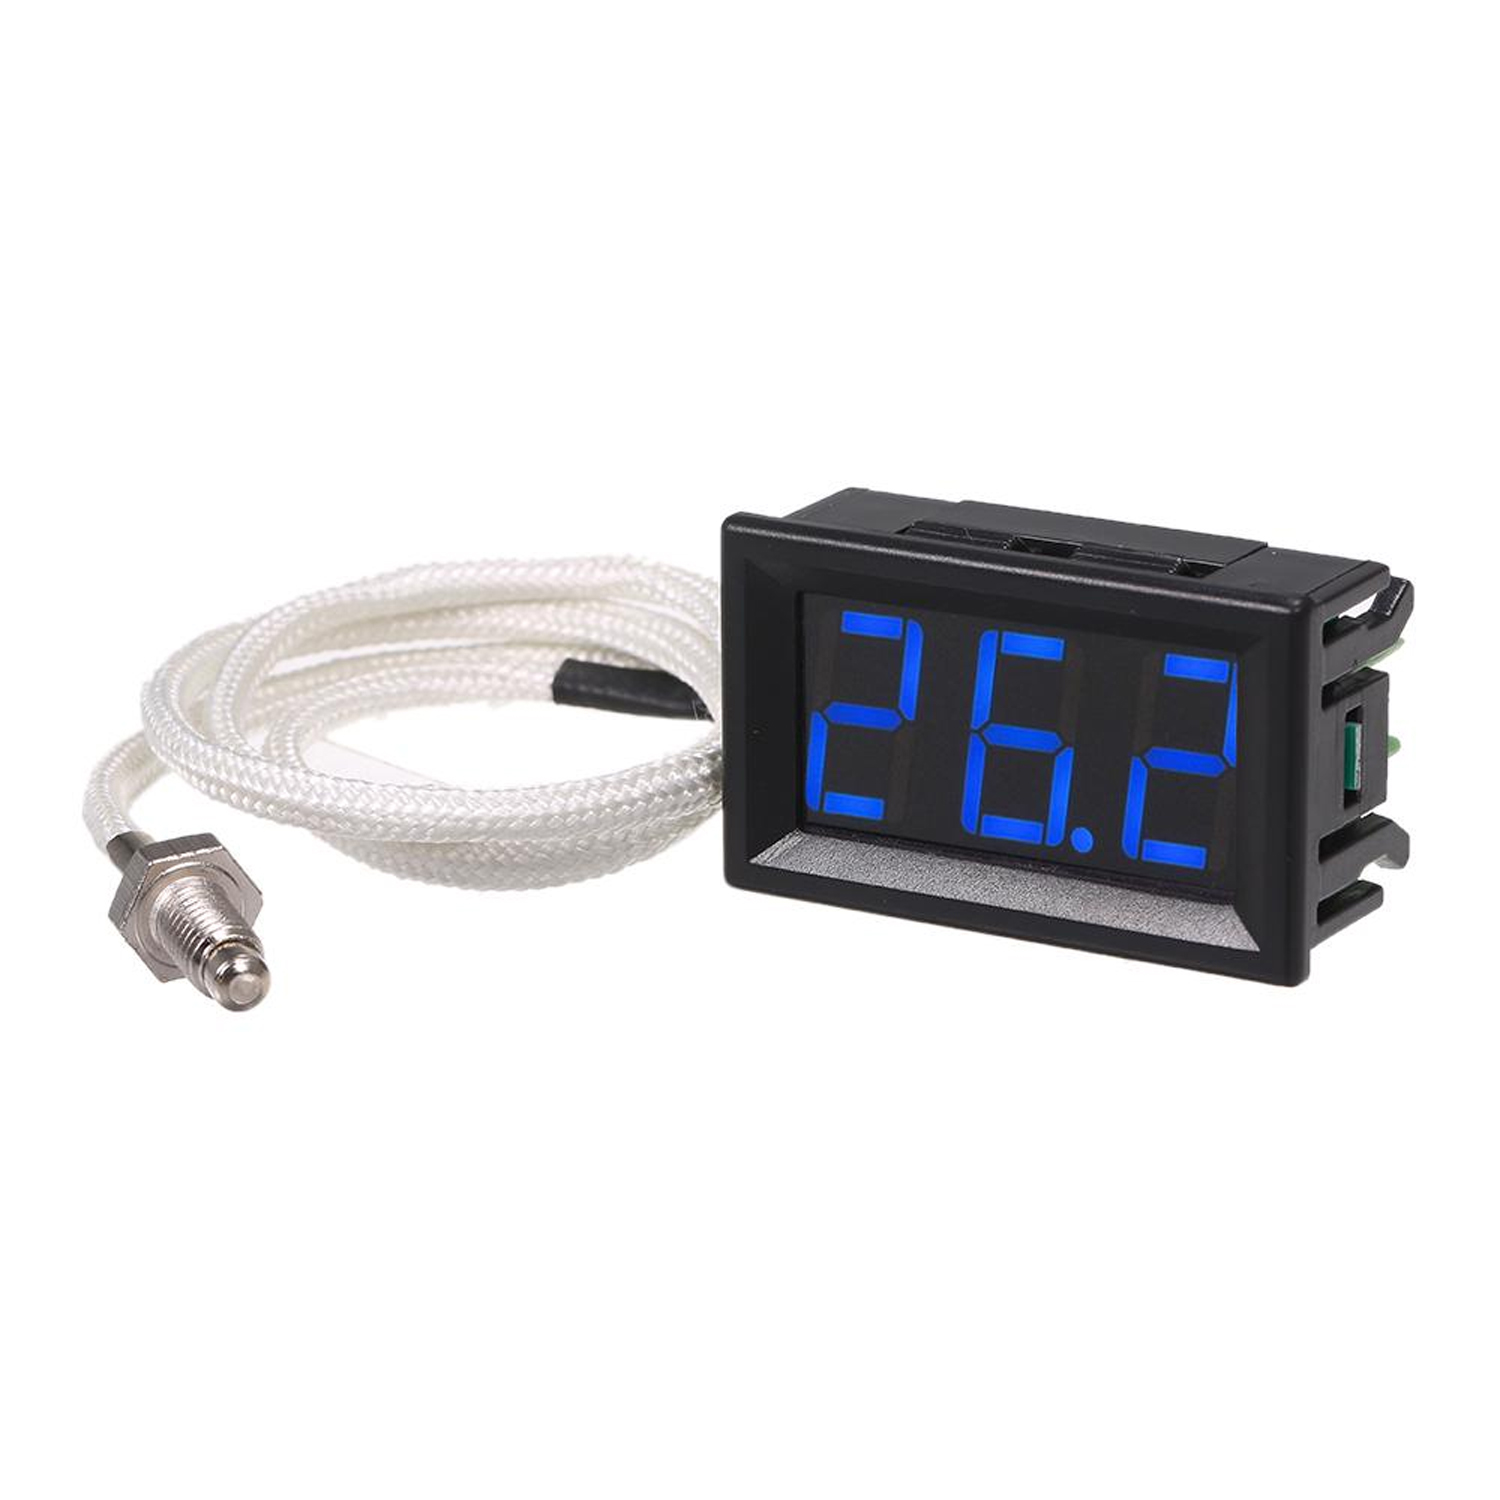 Термометр электронный XH-B310 термопара тип К от -30 до 800 °C синие цифры, фото